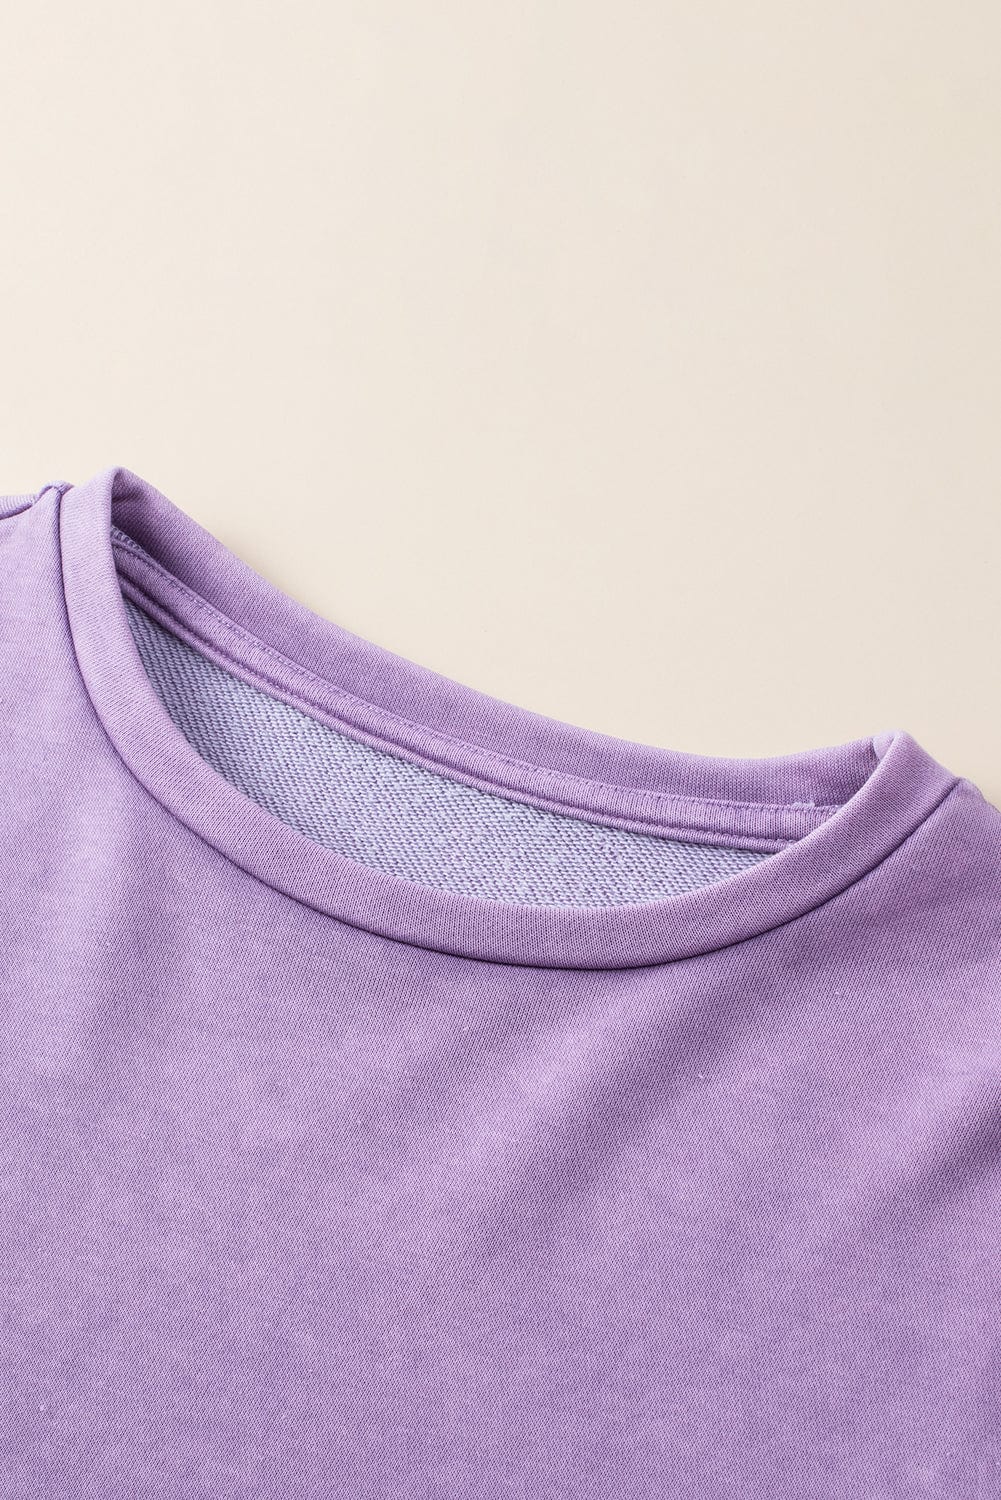 The802Gypsy  Tops/Sweatshirts & Hoodies TRAVELING GYPSY-Mineral Wash Sweatshirt